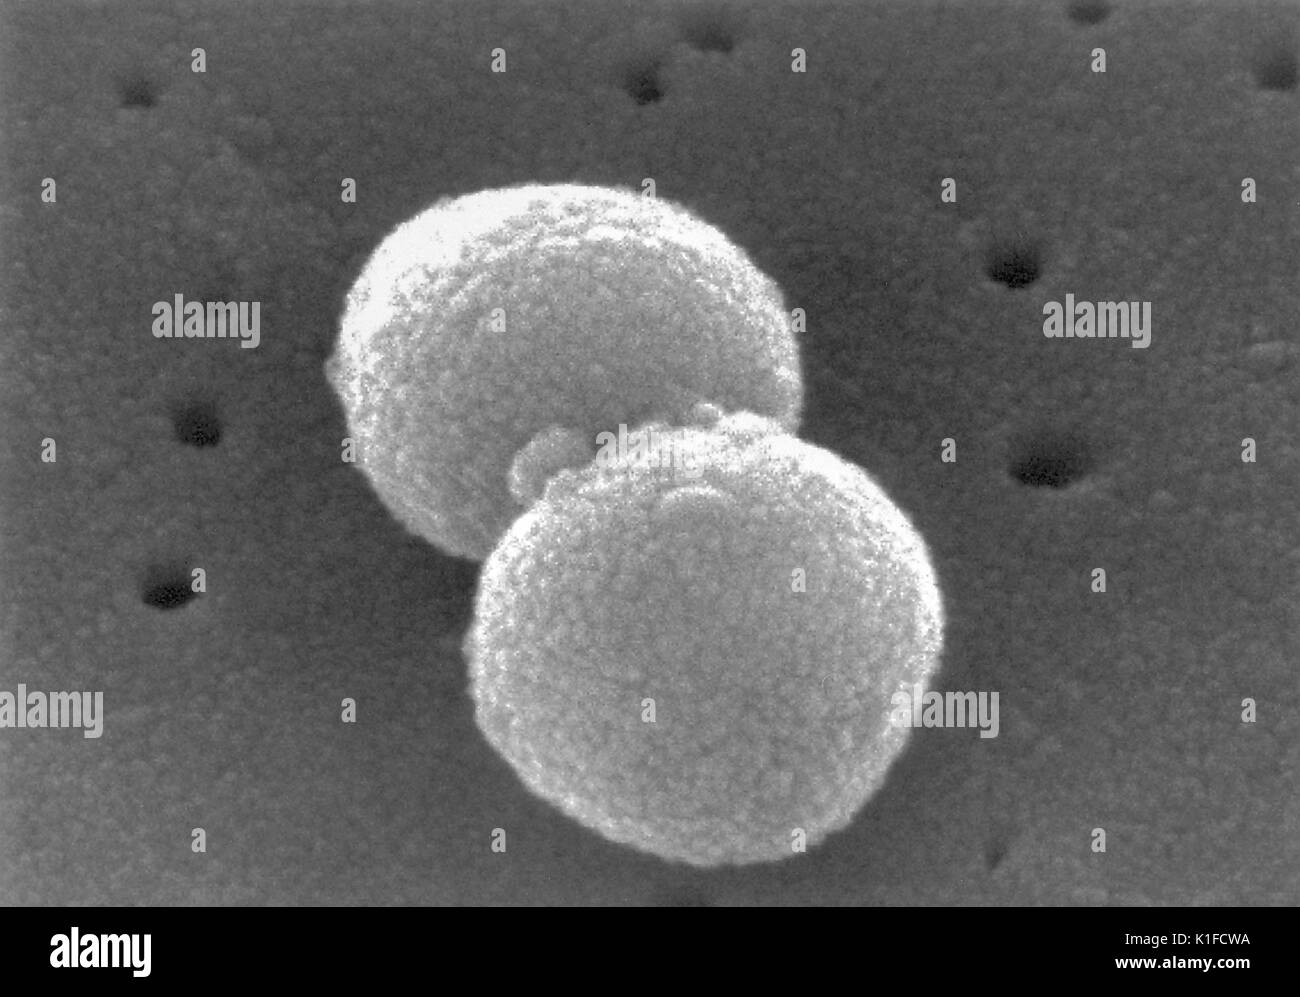 Scanning Electron Micrograph (SEM) eine Reihe von Gram-positiven Bakterien Streptokokkus pneumoniae. Bild mit freundlicher Genehmigung von CDC/Dr. Richard Facklam. 1982. Stockfoto